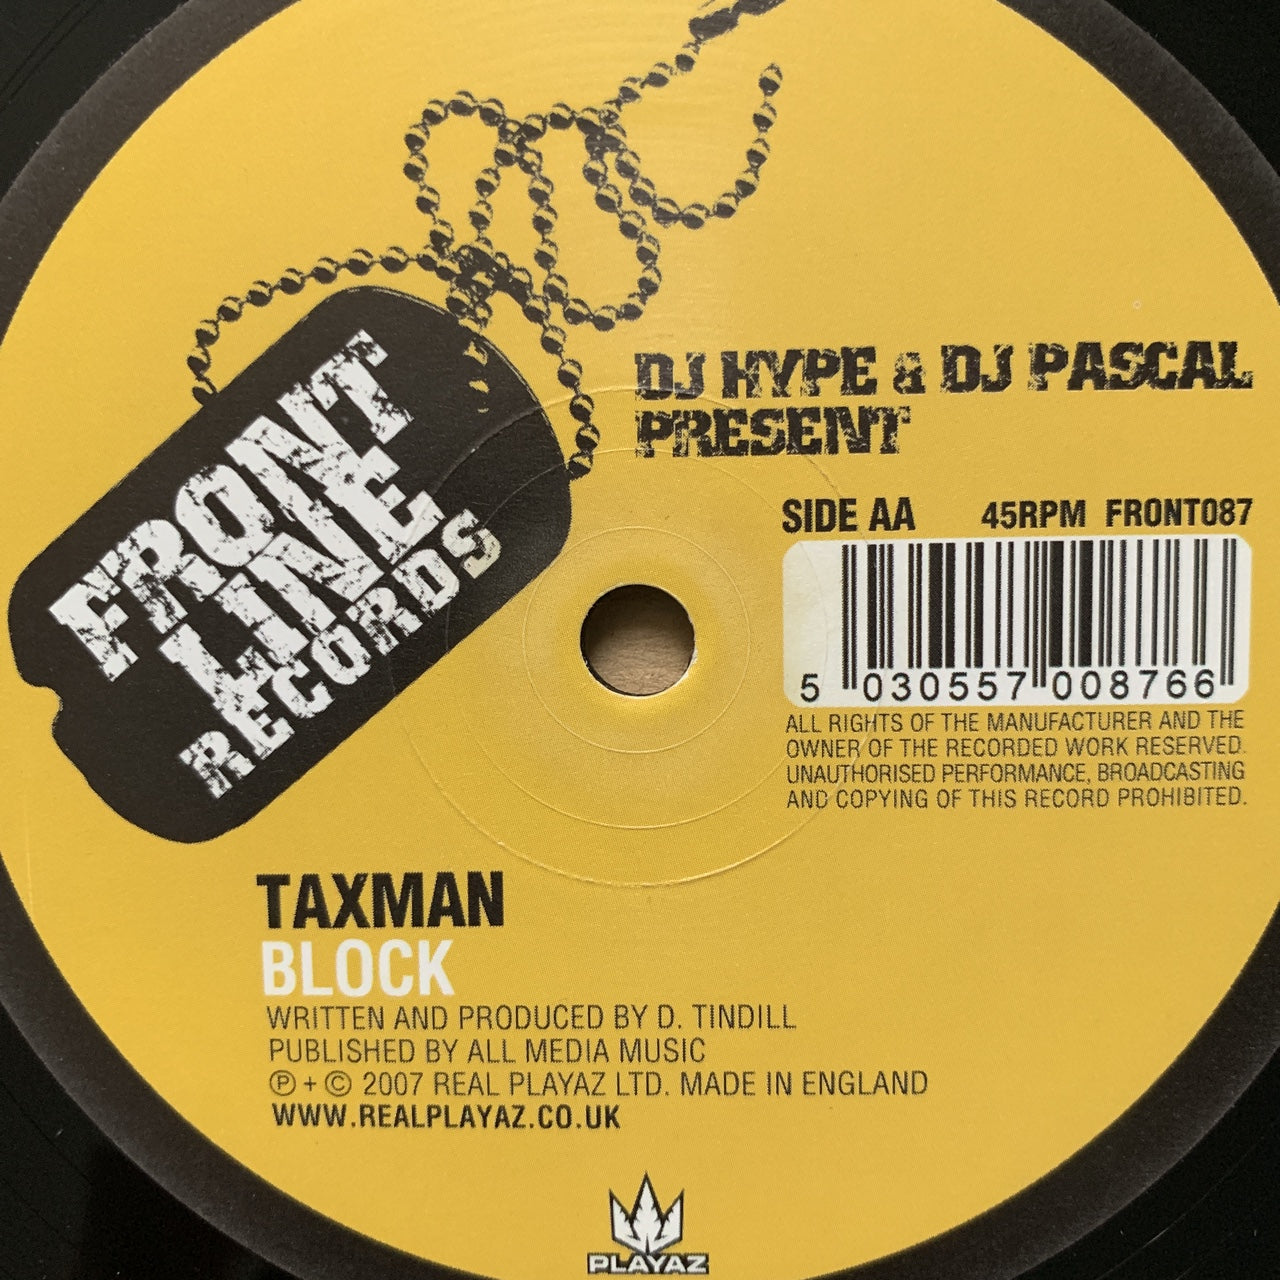 DJ Hype & Pascal present Taxman “Too Bad VIP” / “Block”